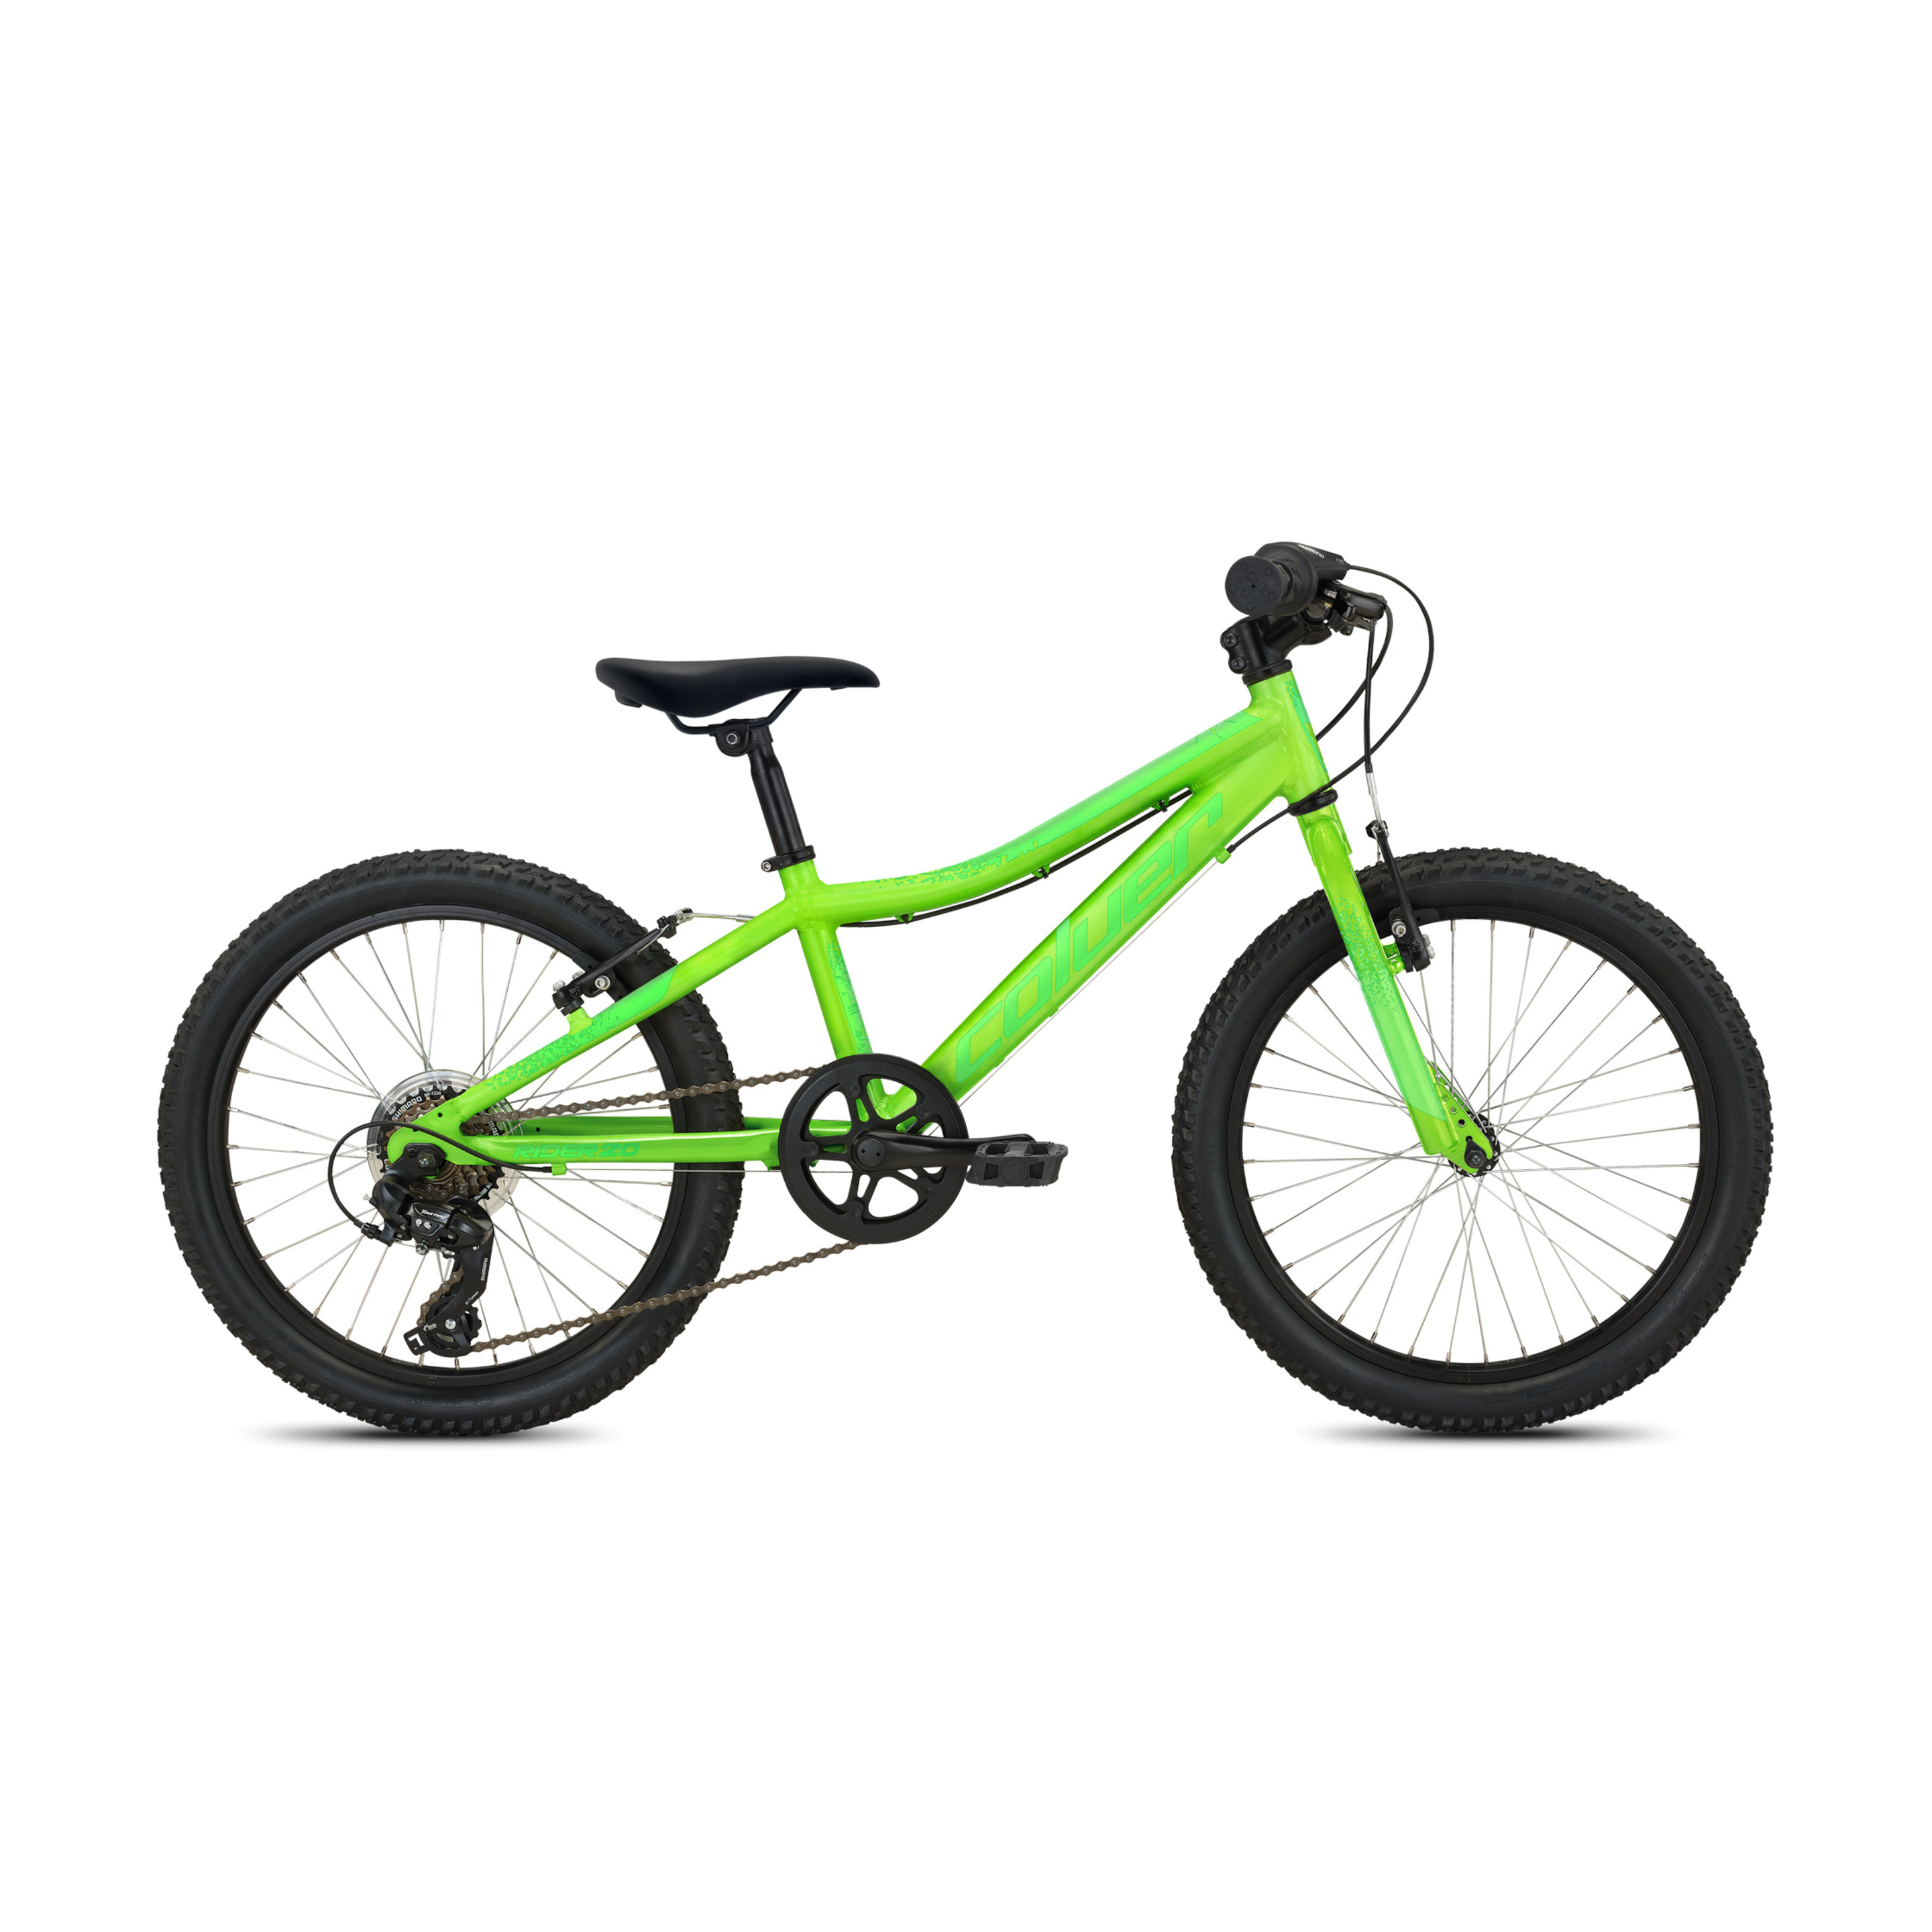 Bicicleta Rider 206 - verde - 